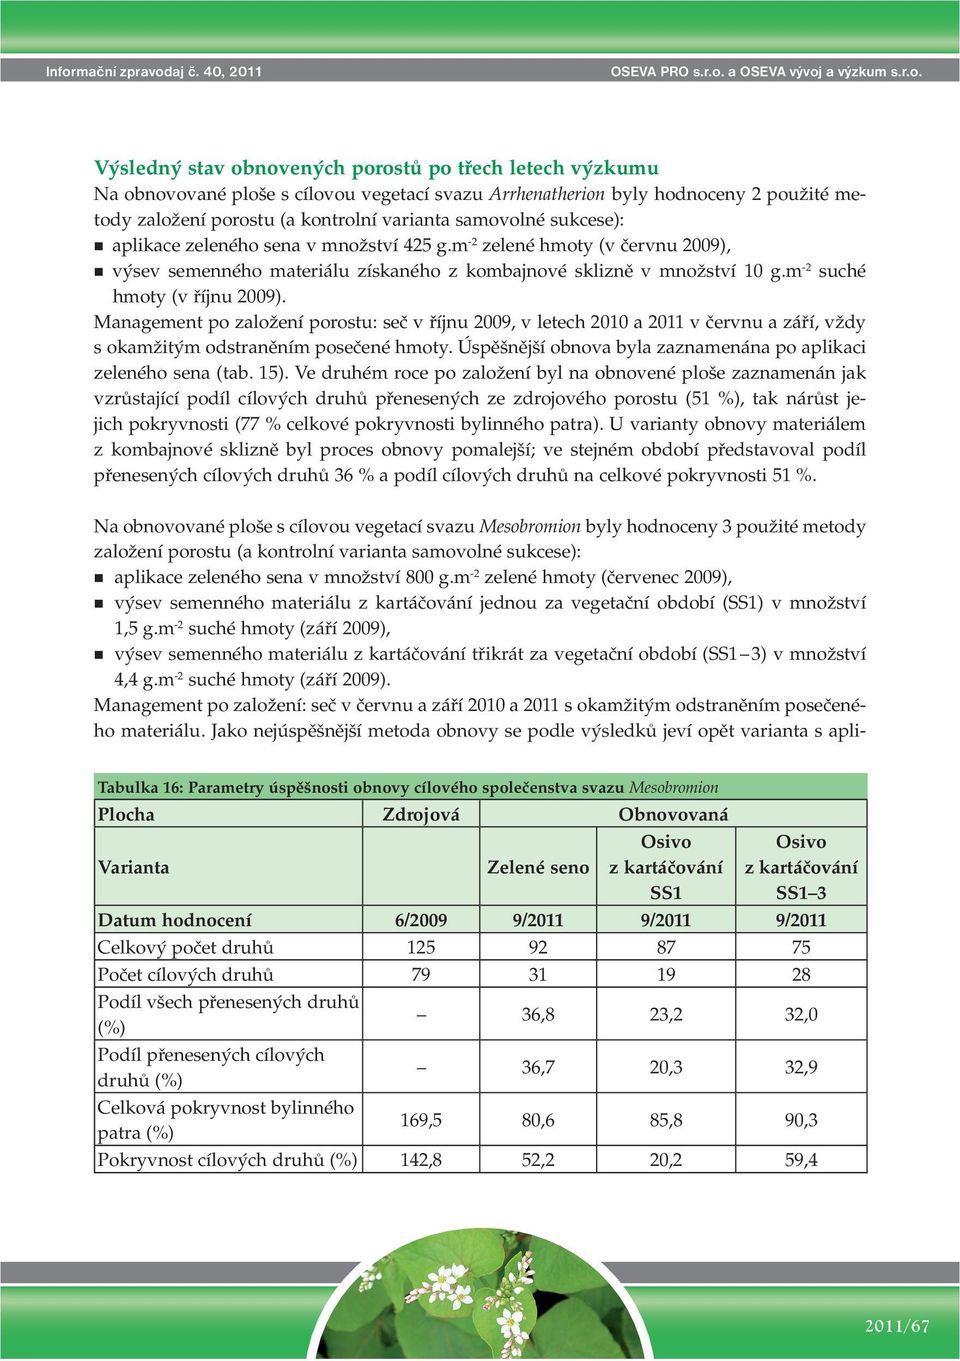 samovolné sukcese): aplikace zeleného sena v množství 425 g.m -2 zelené hmoty (v červnu 2009), výsev semenného materiálu získaného z kombajnové sklizně v množství 10 g.m -2 suché hmoty (v říjnu 2009).